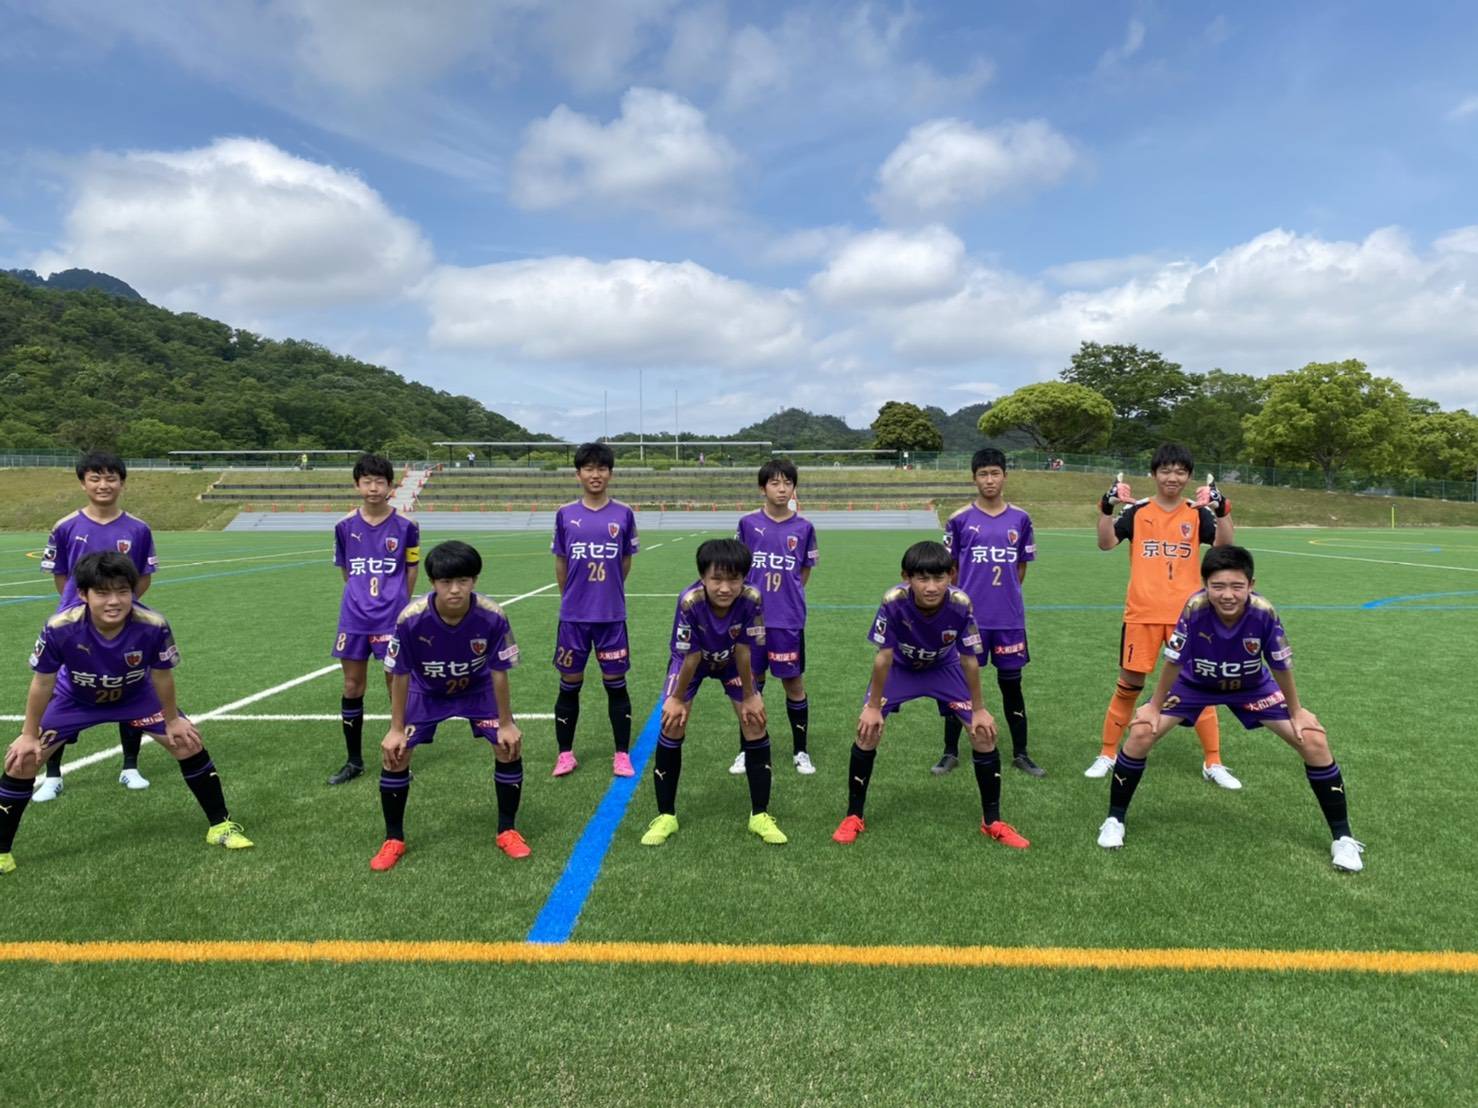 【U-15】高円宮杯JFA U-15サッカーリーグ滋賀2021 2部リーグ第9節